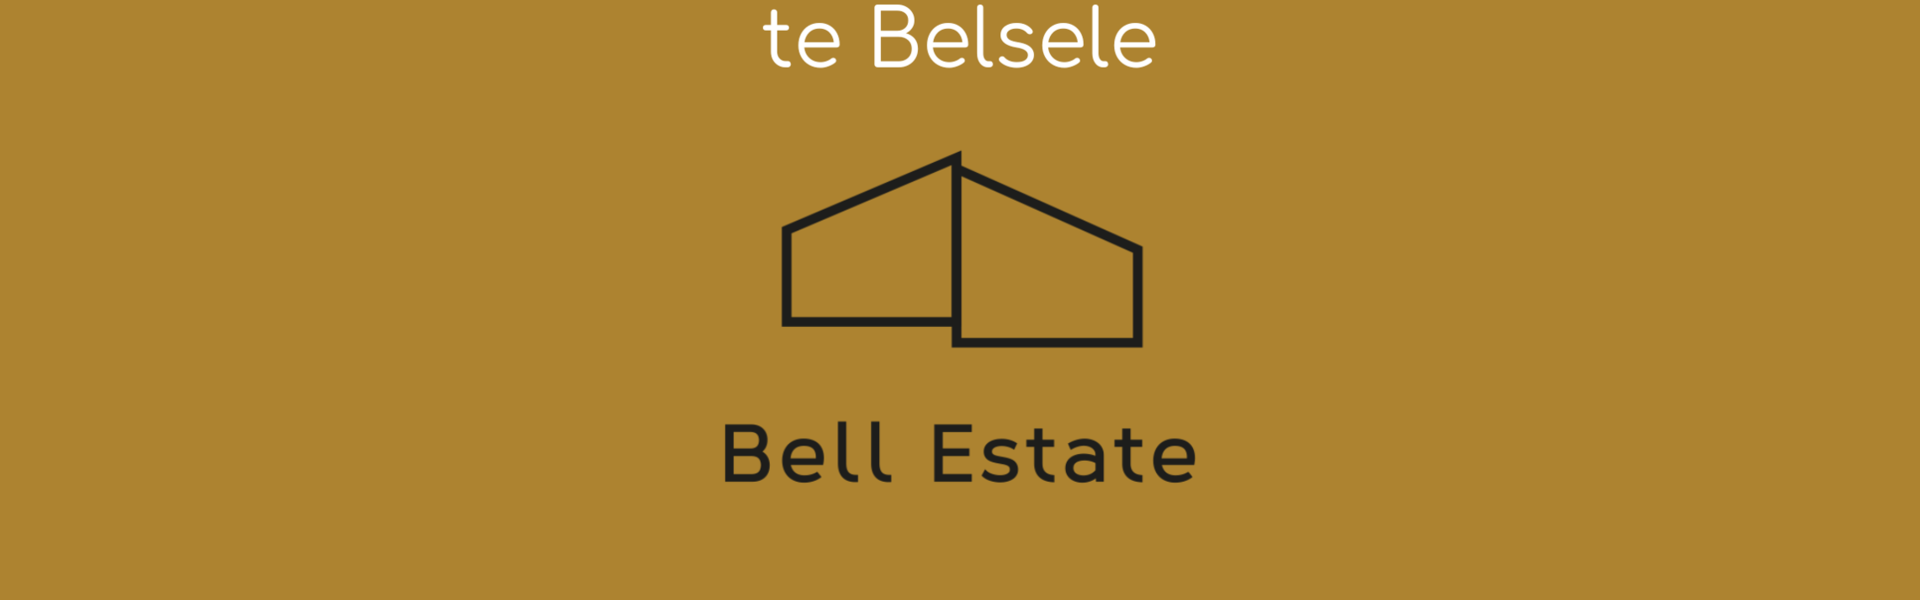 Huis te koop in Belsele - Sint-Niklaas